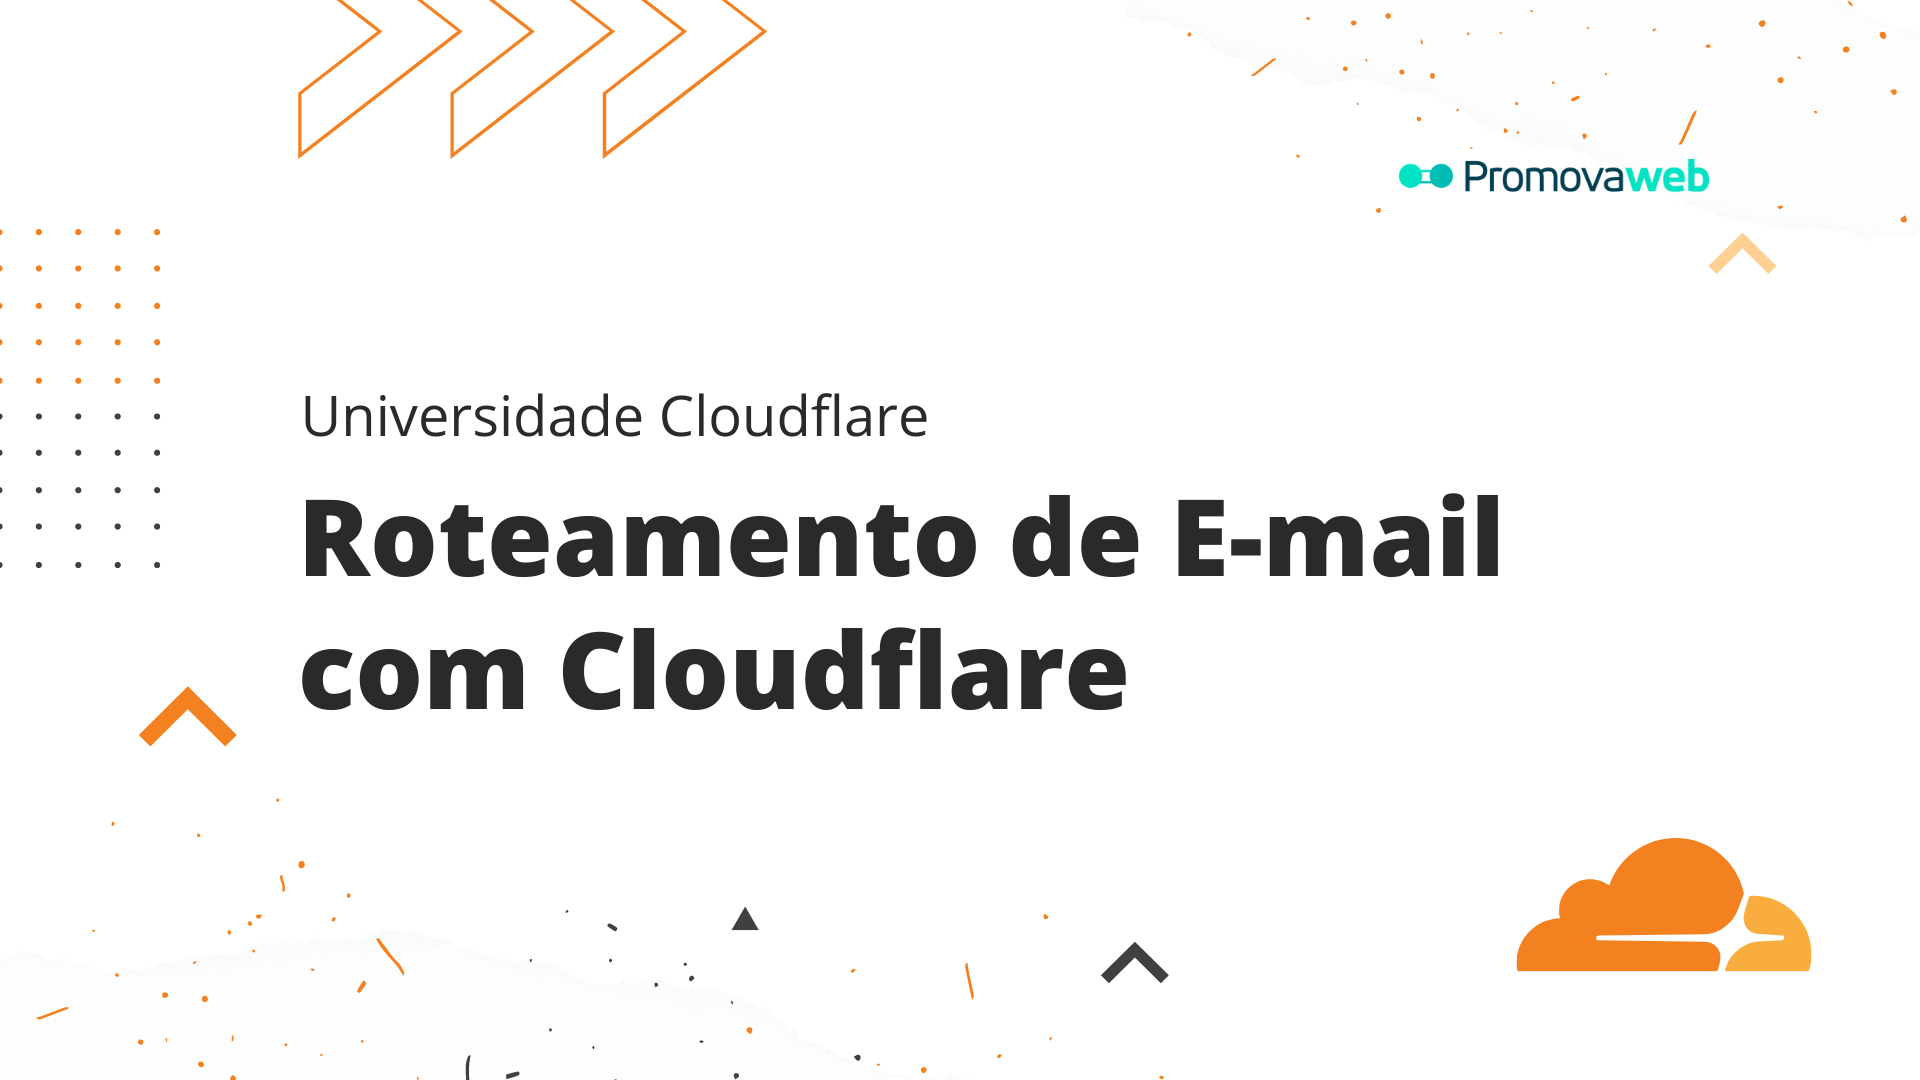 Roteamento de E-mail com Cloudflare